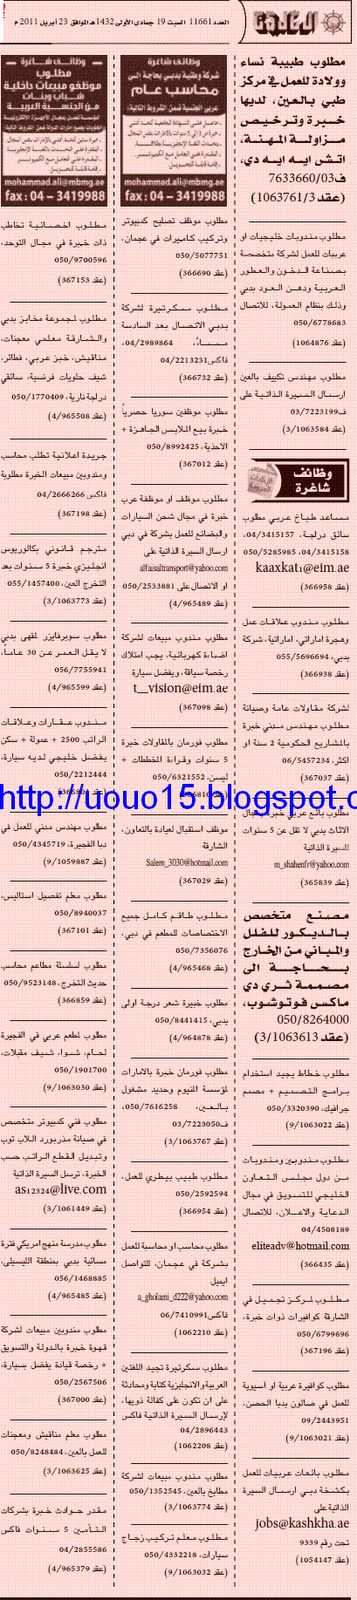  وظائف جريده الخليج - السبت 23 ابريل 2011 2